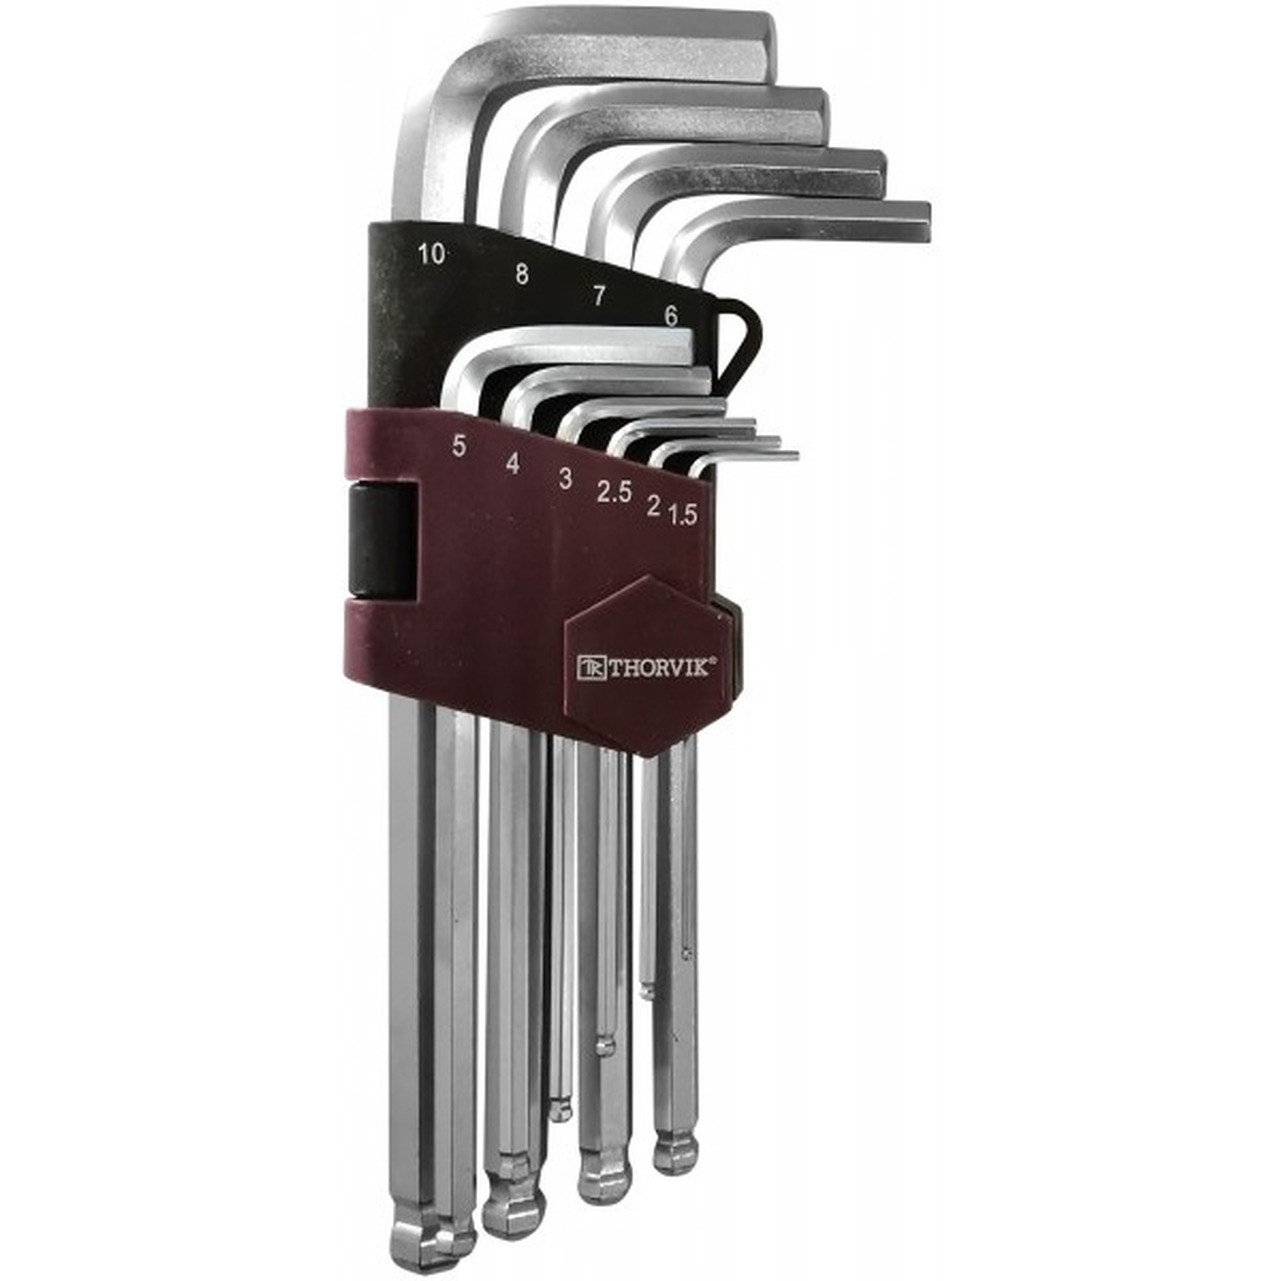 Набор ключей шестигранных Thorvik 1,5-10мм с шаром 10шт HKB10S 53076 набор шестигранных ключей sturm 1045 04 10x10 cr v 10шт 1 5 10мм